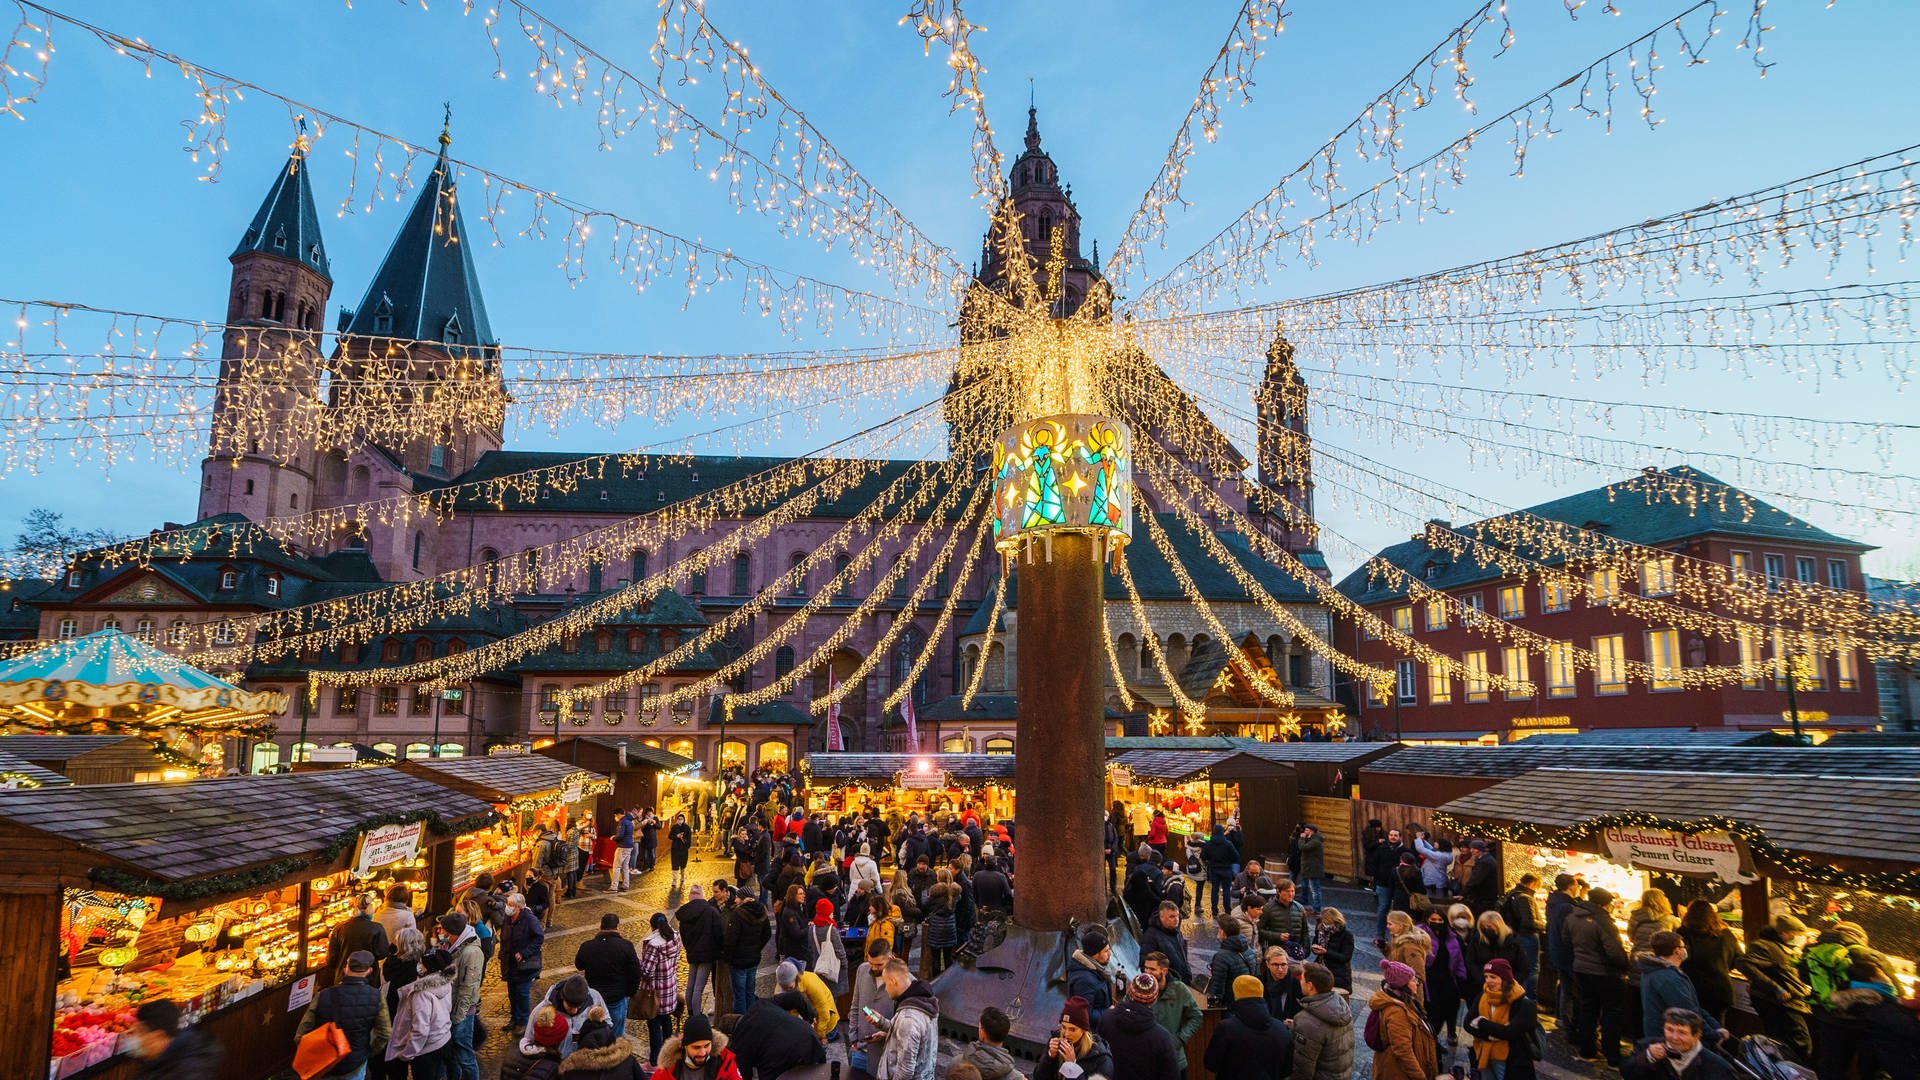 ++ Mainzer Weihnachtsmarkt öffnet ++ Heizungen in Ludwigshafen abgedreht ++ Toter bei Brand in Mainz ++